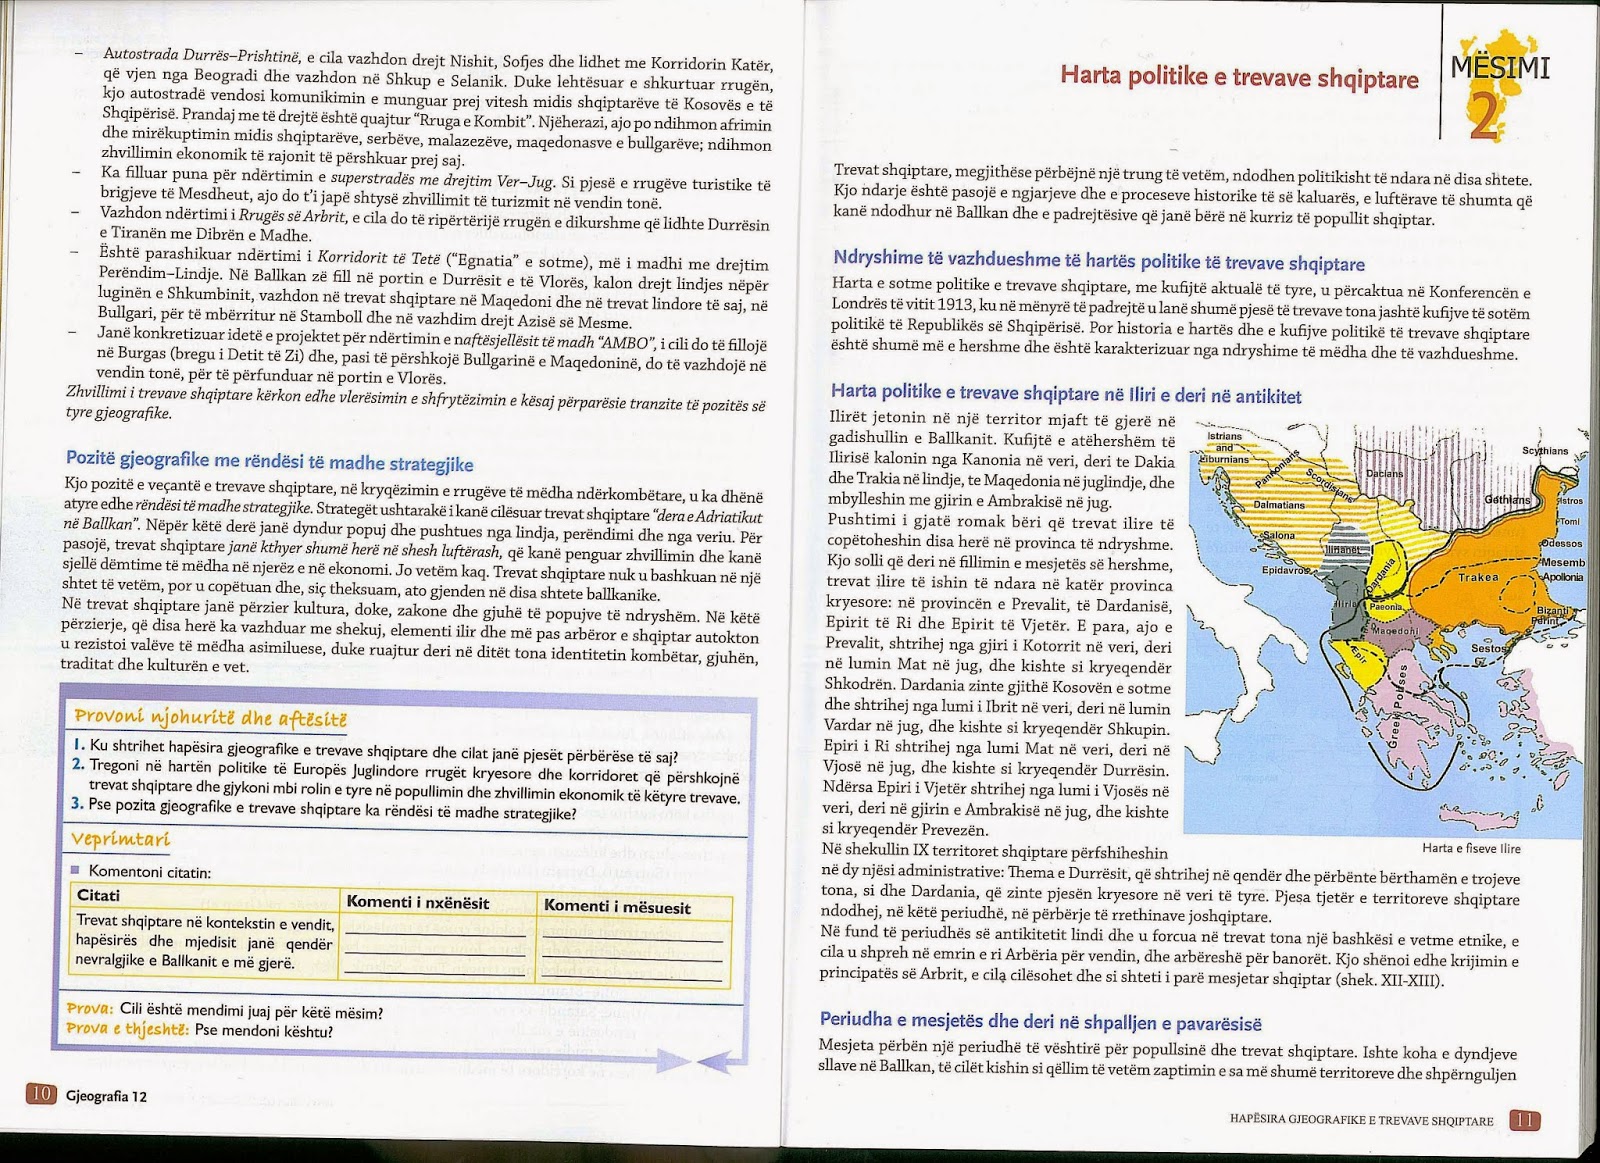 Παραμένουν οι αλυτρωτικές αναφορές εις βάρος της Ελλάδας στα σχολικά βιβλία Γεωγραφίας στην Αλβανία - Φωτογραφία 9